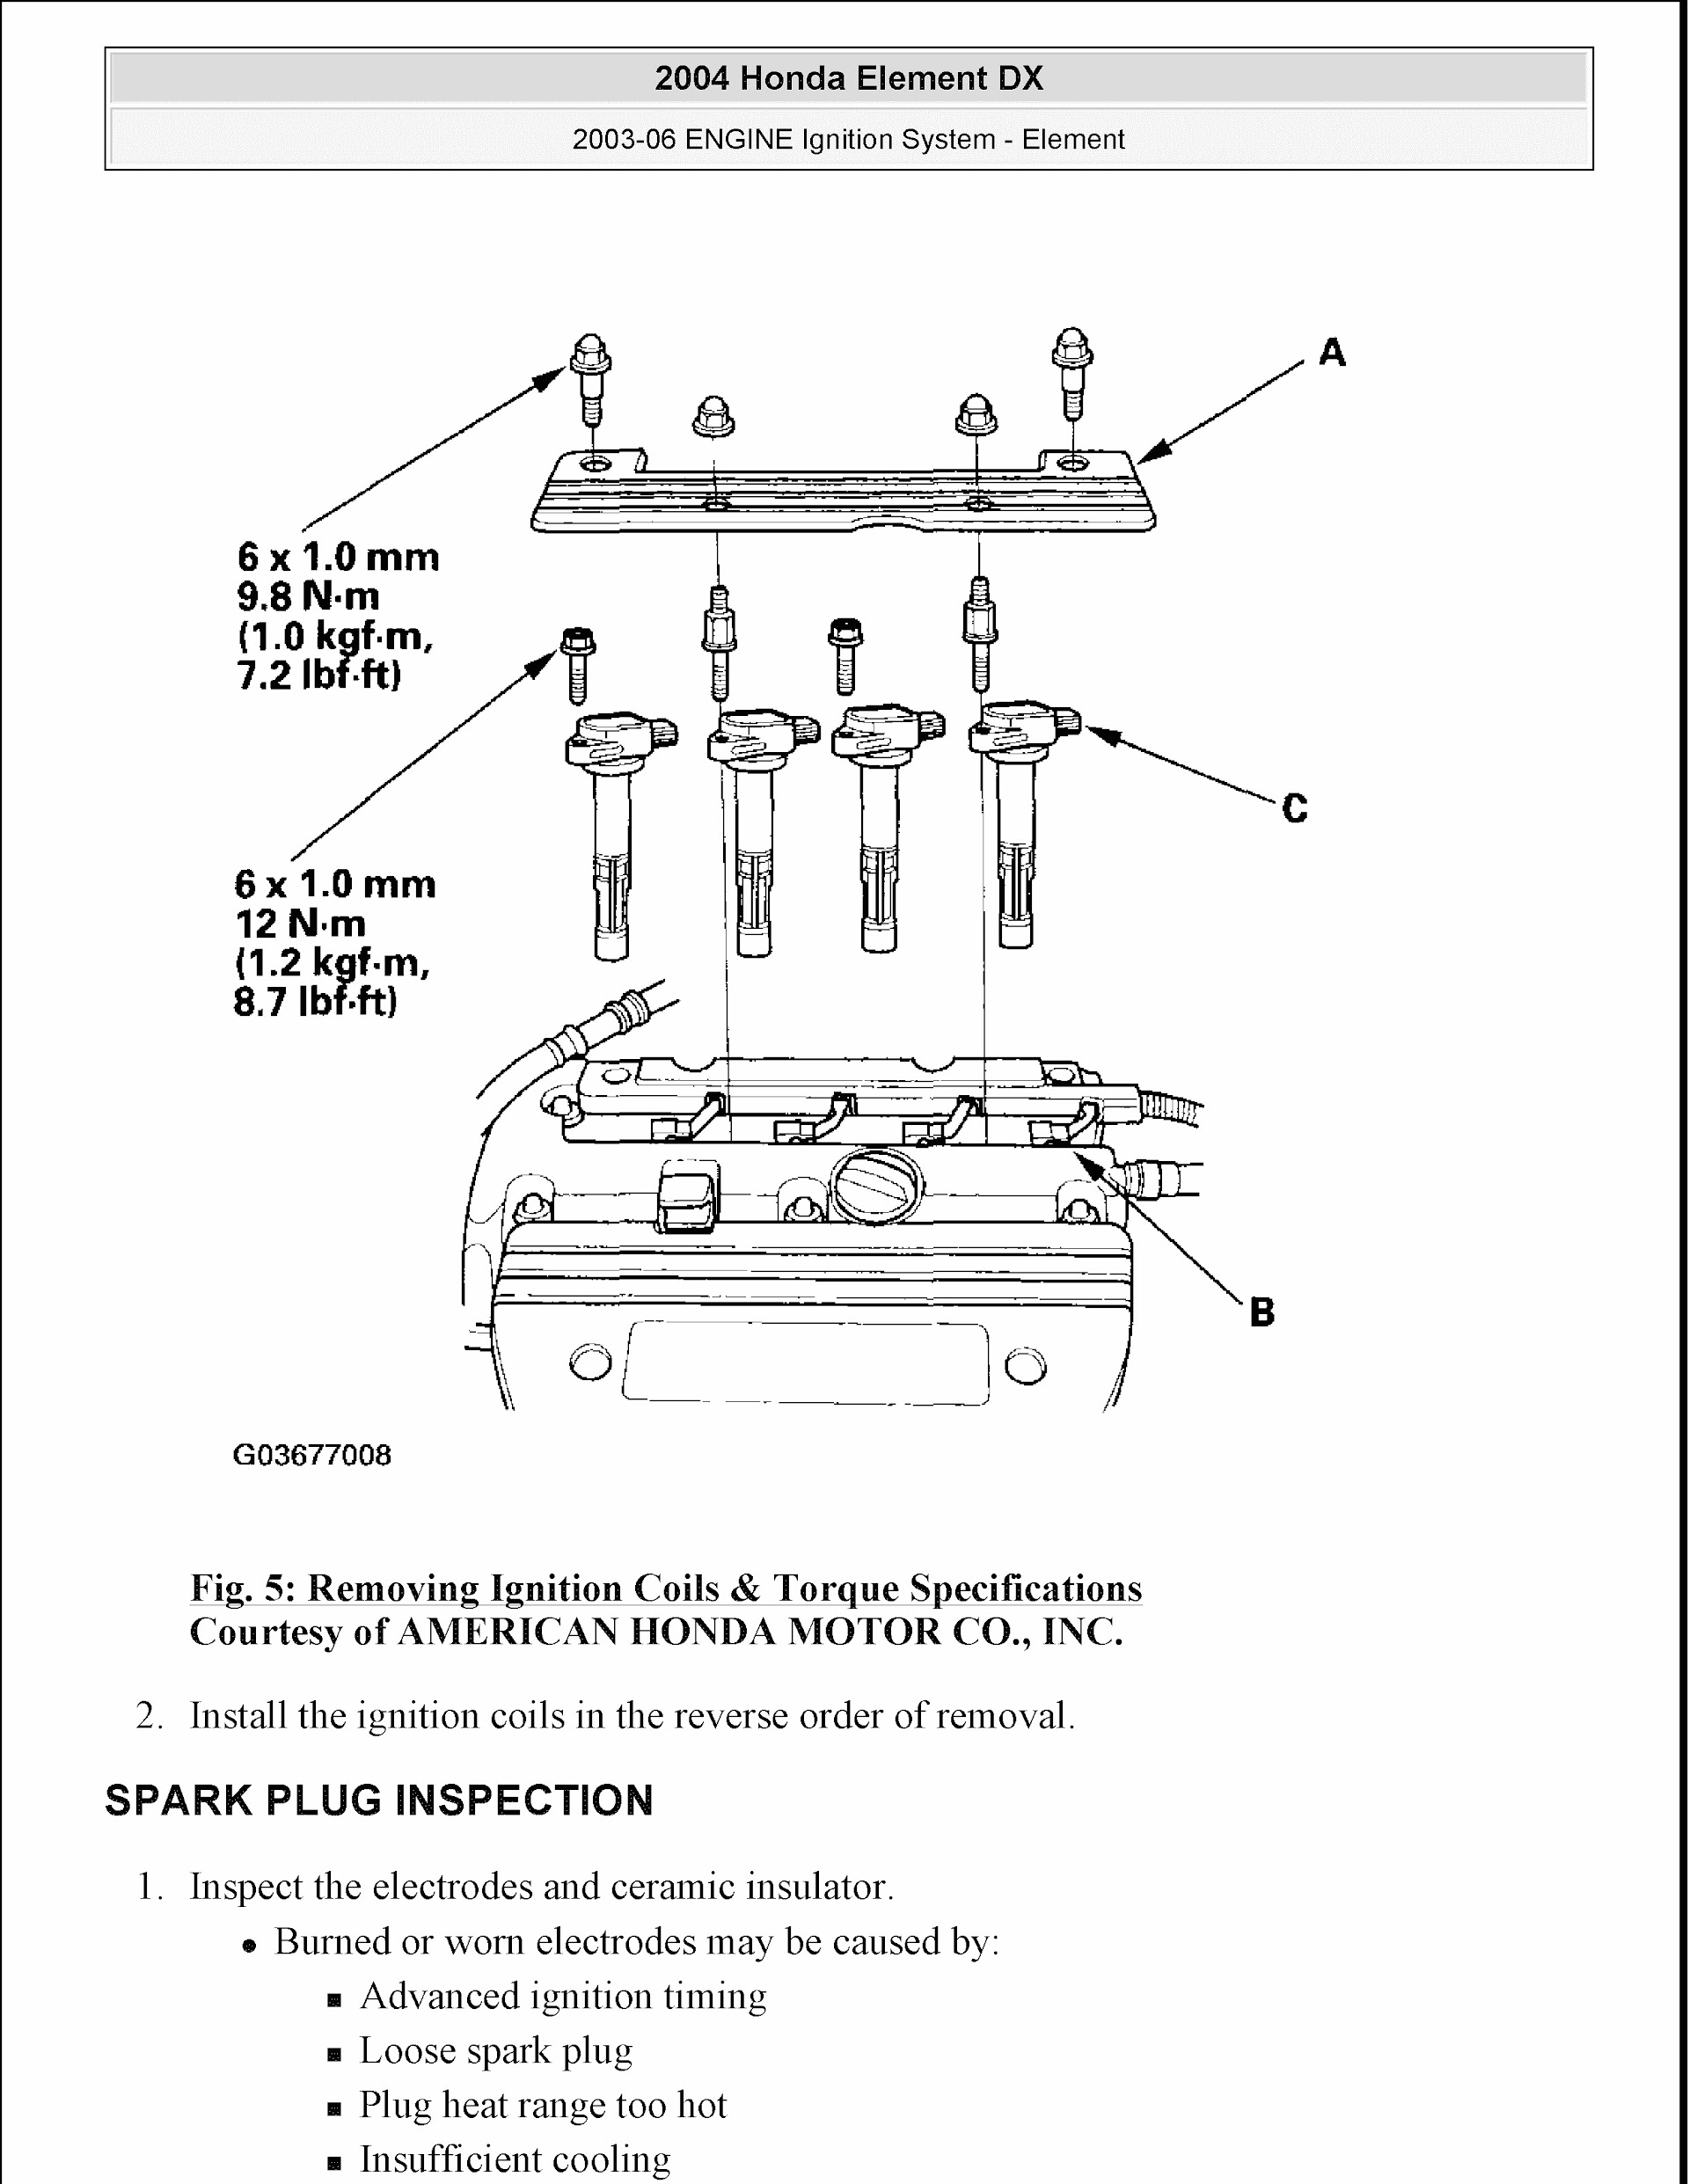 2008 Honda Element Repair Manual, Ignition System